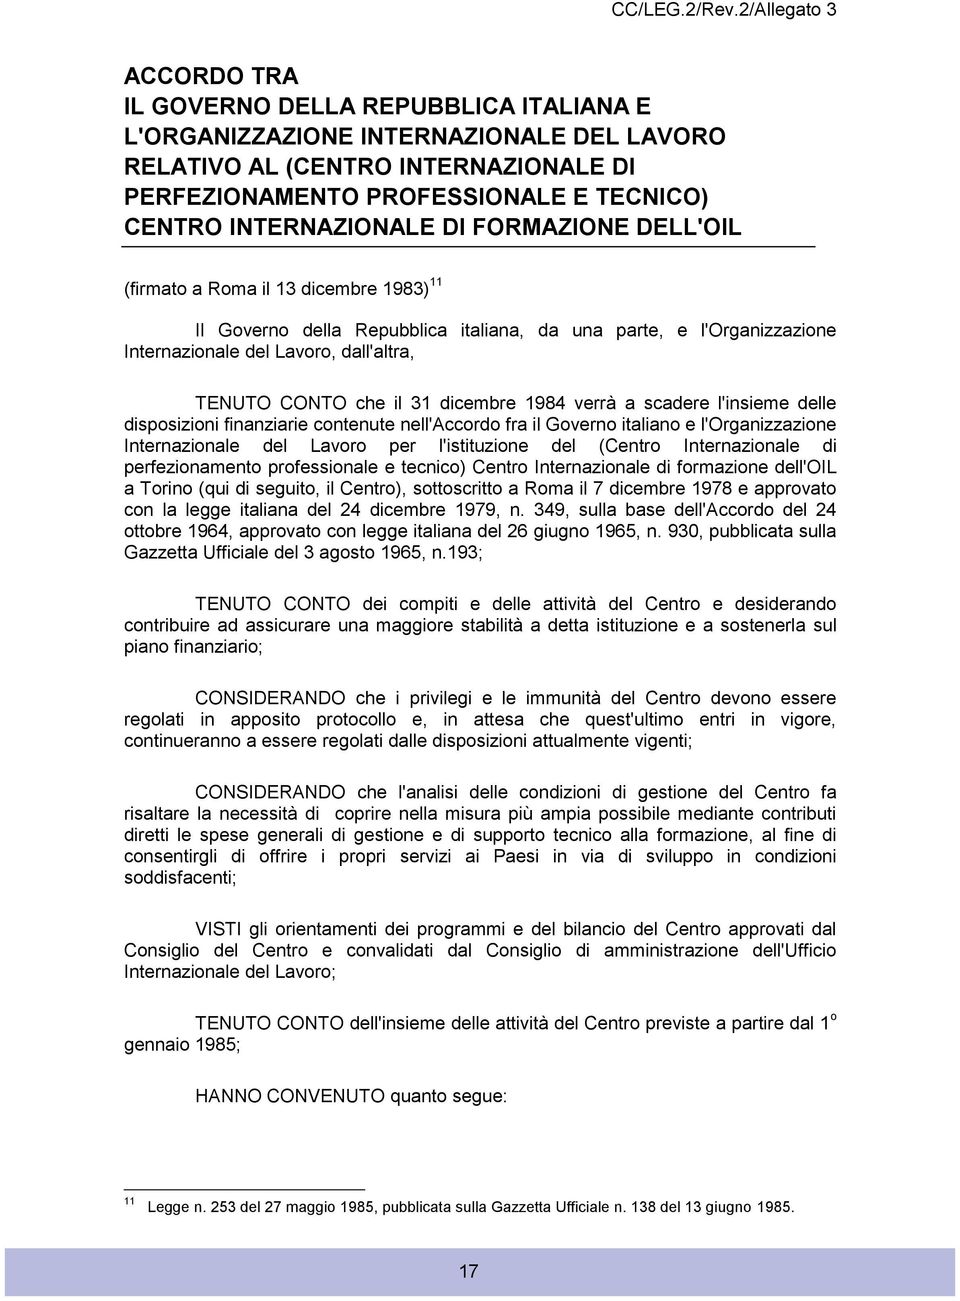 INTERNAZIONALE DI FORMAZIONE DELL'OIL (firmato a Roma il 13 dicembre 1983) 11 Il Governo della Repubblica italiana, da una parte, e l'organizzazione Internazionale del Lavoro, dall'altra, TENUTO